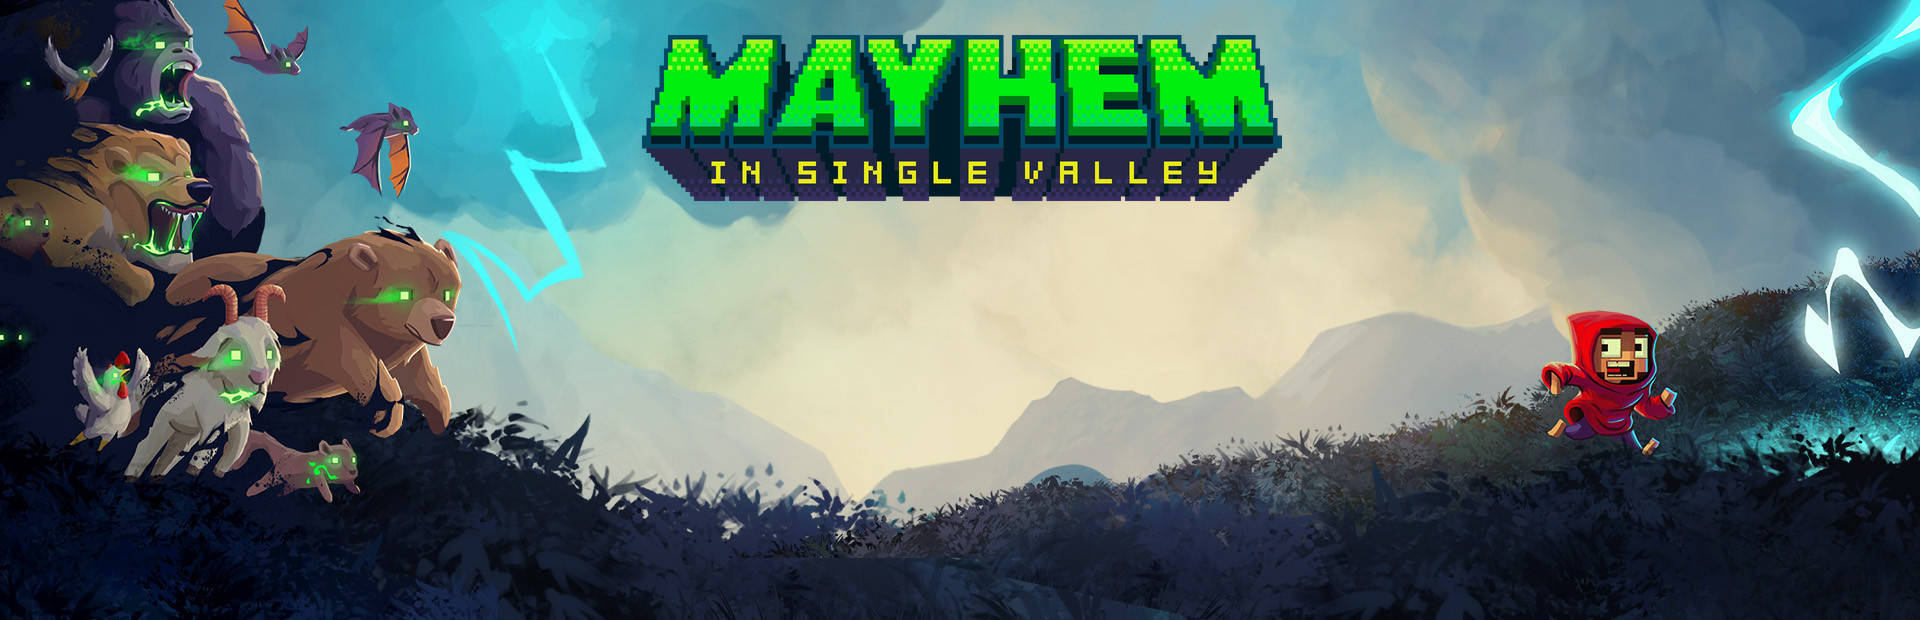 دانلود بازی Mayhem In Single Valley برای پی سی | گیمباتو